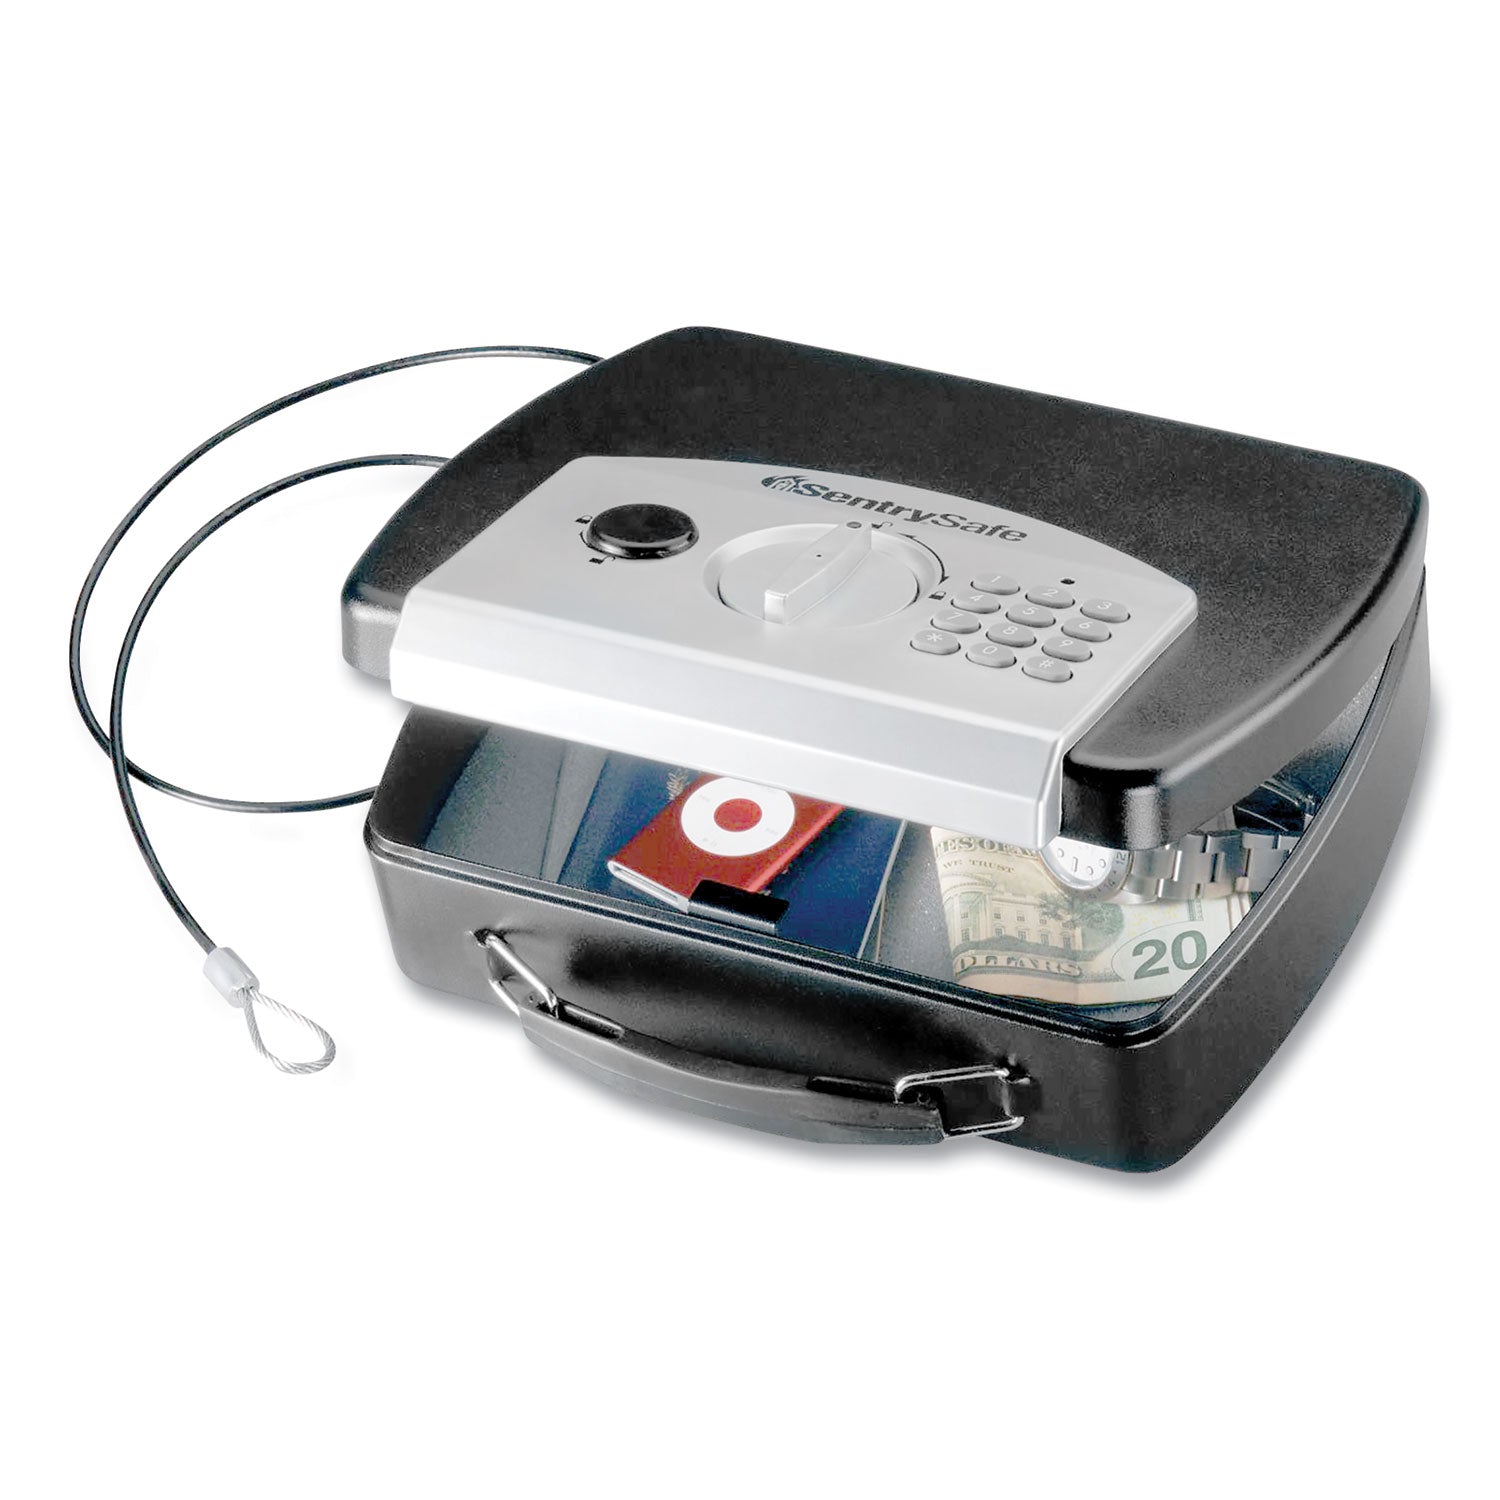 p008e-portable-electronic-security-safe-008-cu-ft-10-x-79-x-29-black-silver_senp008e - 1